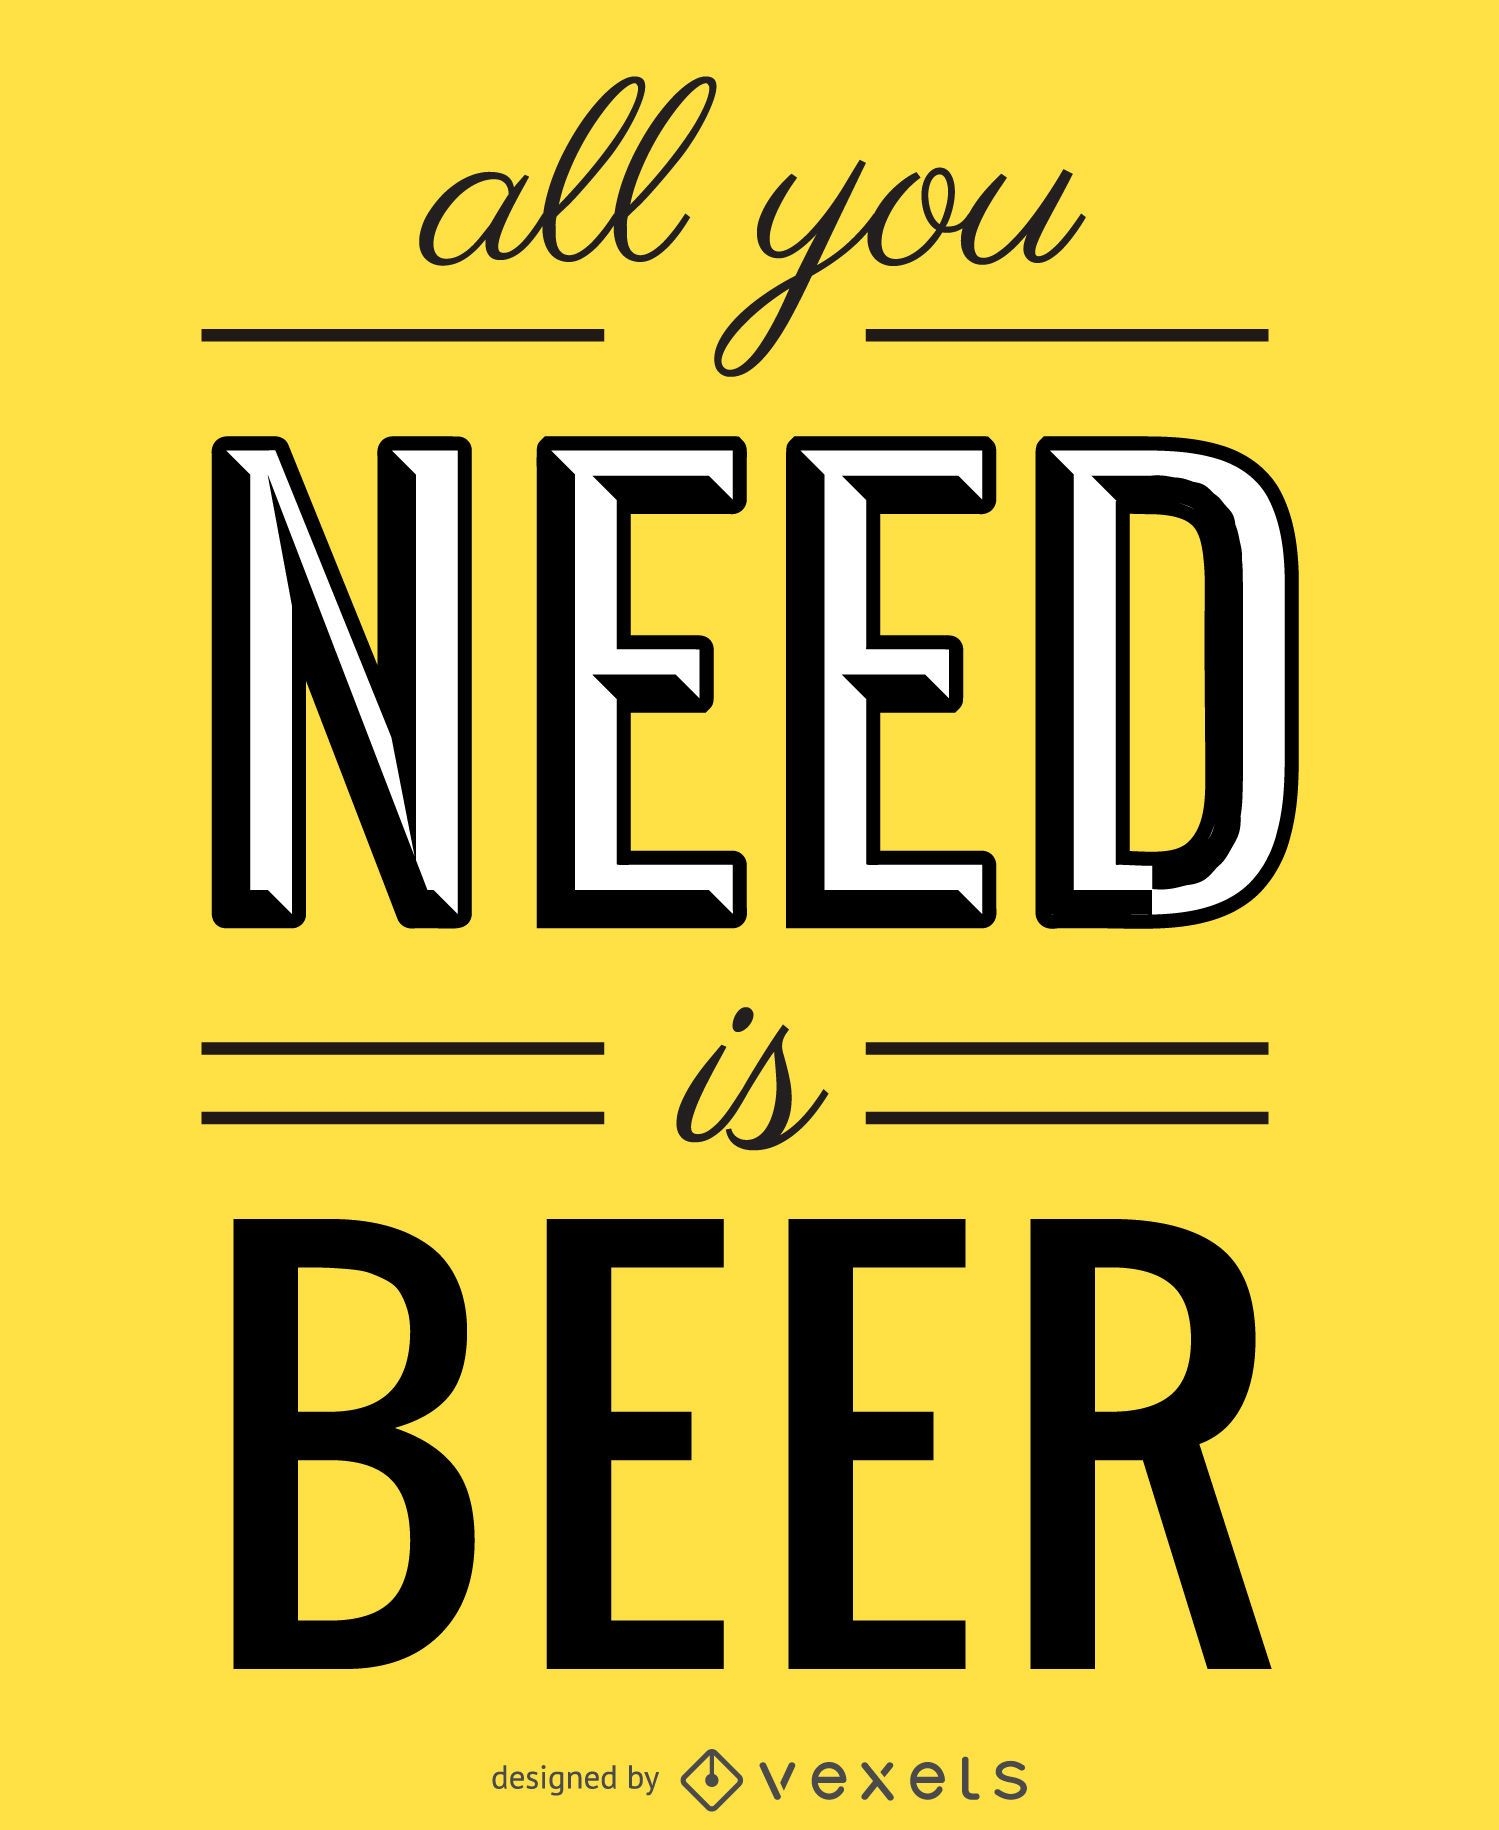 Todo lo que necesitas es un cartel de cerveza.